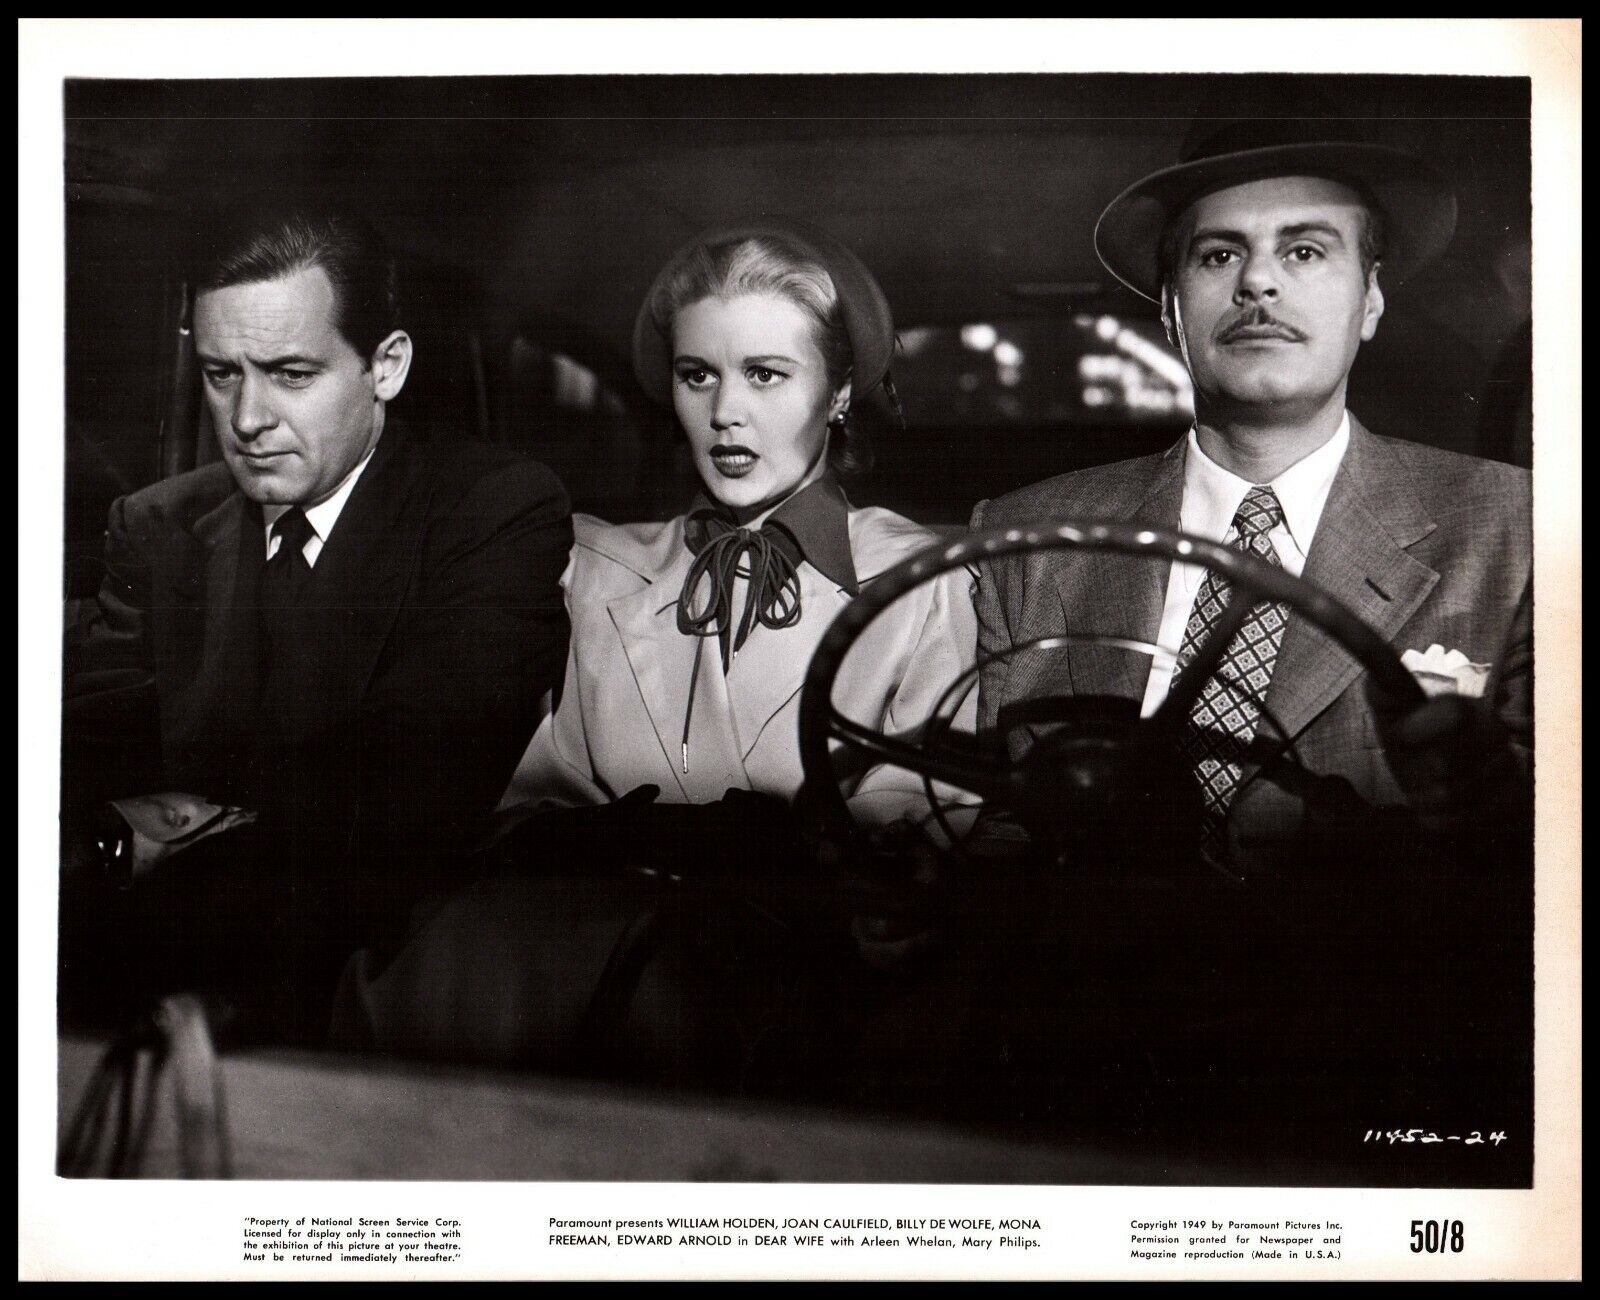 William Holden + Joan Caulfield + Billy De Wolfe in Dear Wife (1949) PHOTO M 69